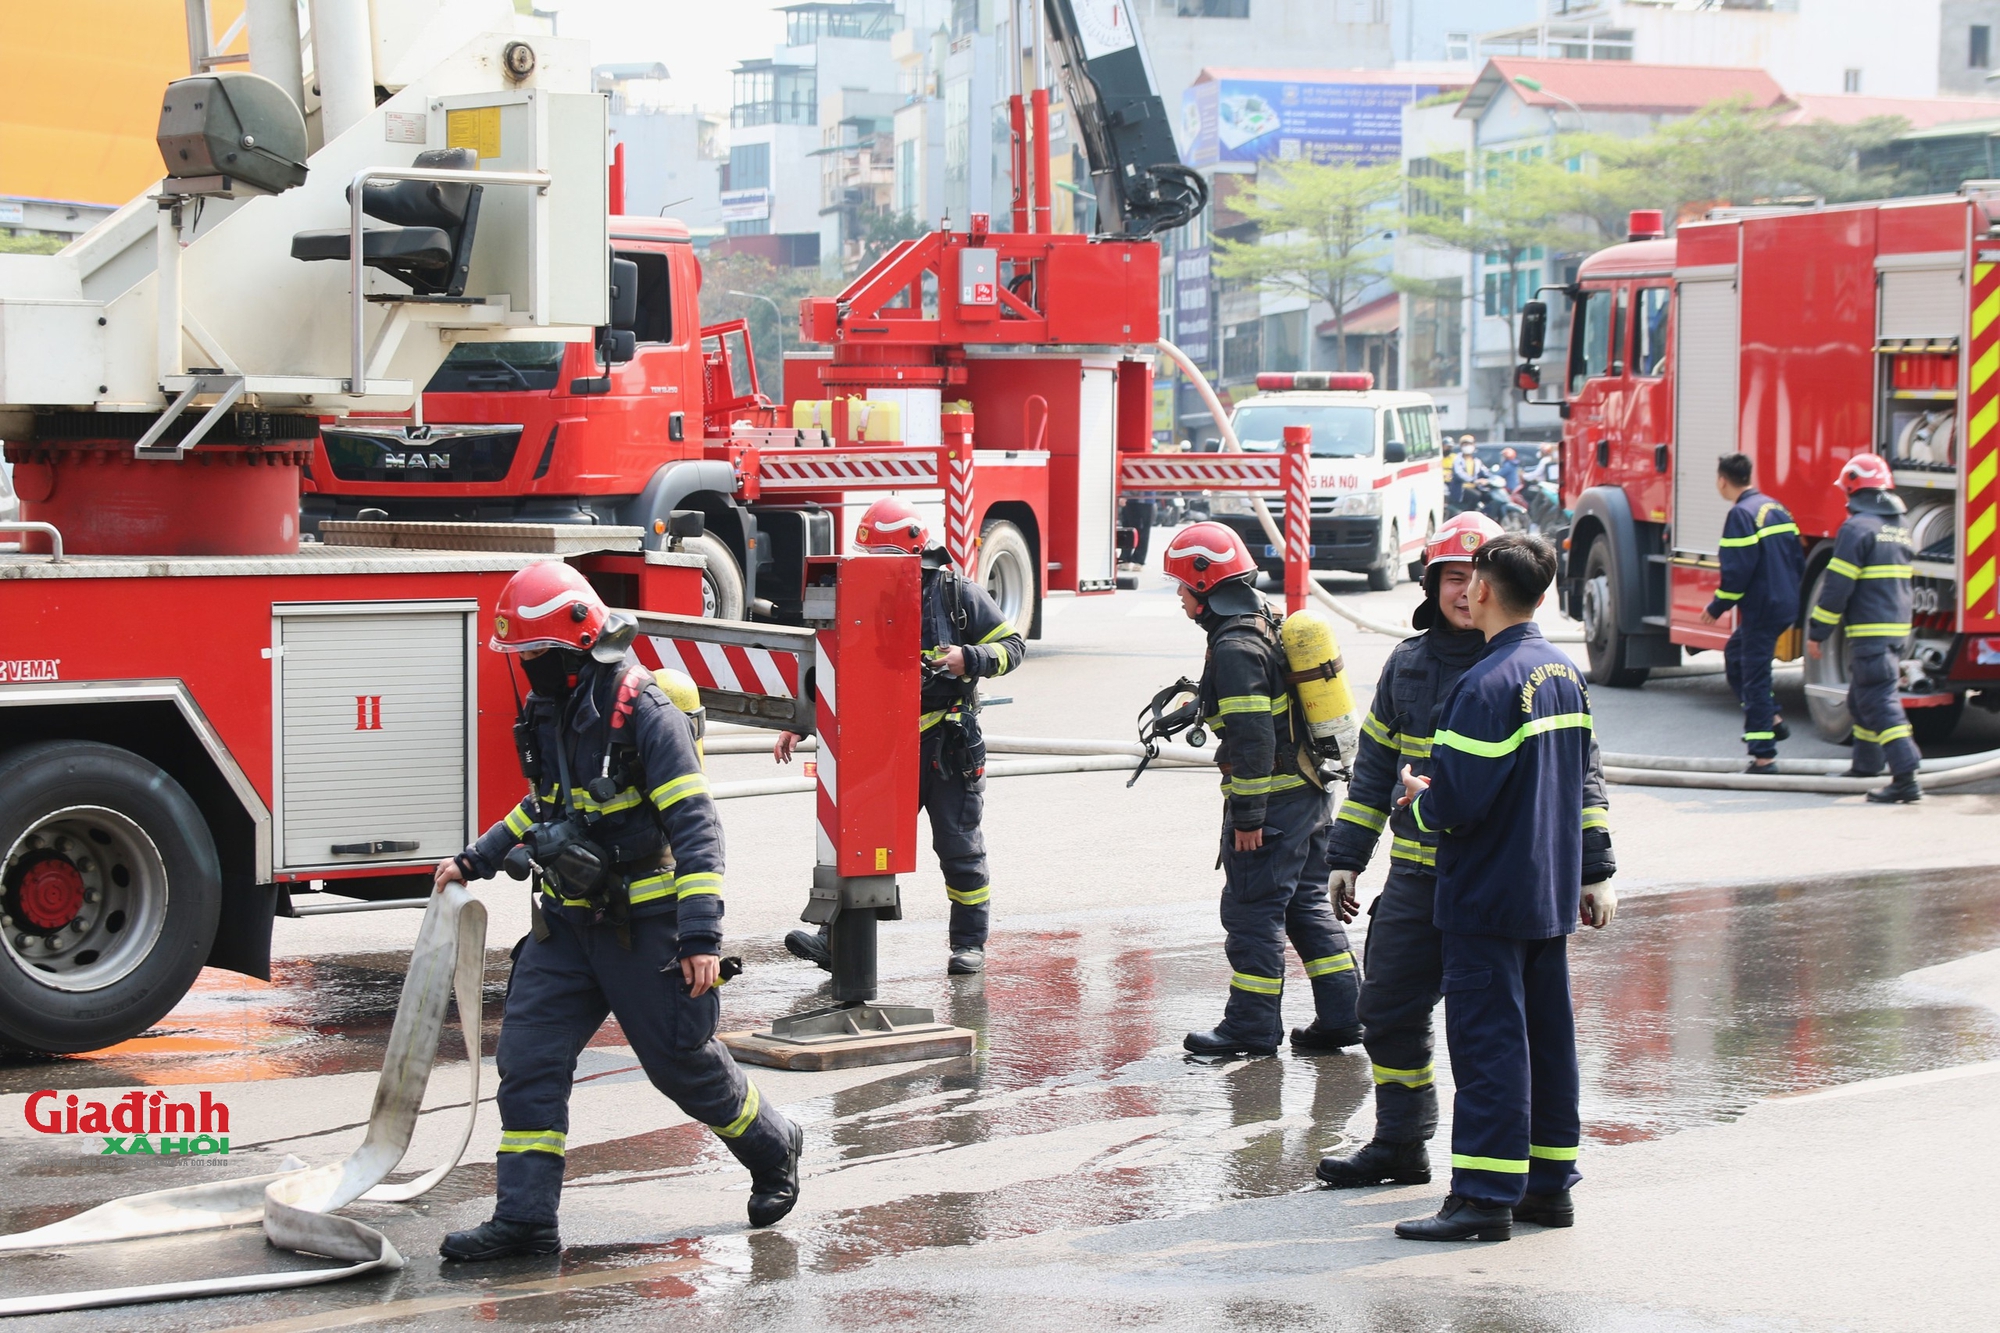 Hé lộ nguyên nhân cháy lớn tại tòa nhà 9 tầng tại ngã 5 nổi tiếng Hà Nội- Ảnh 6.